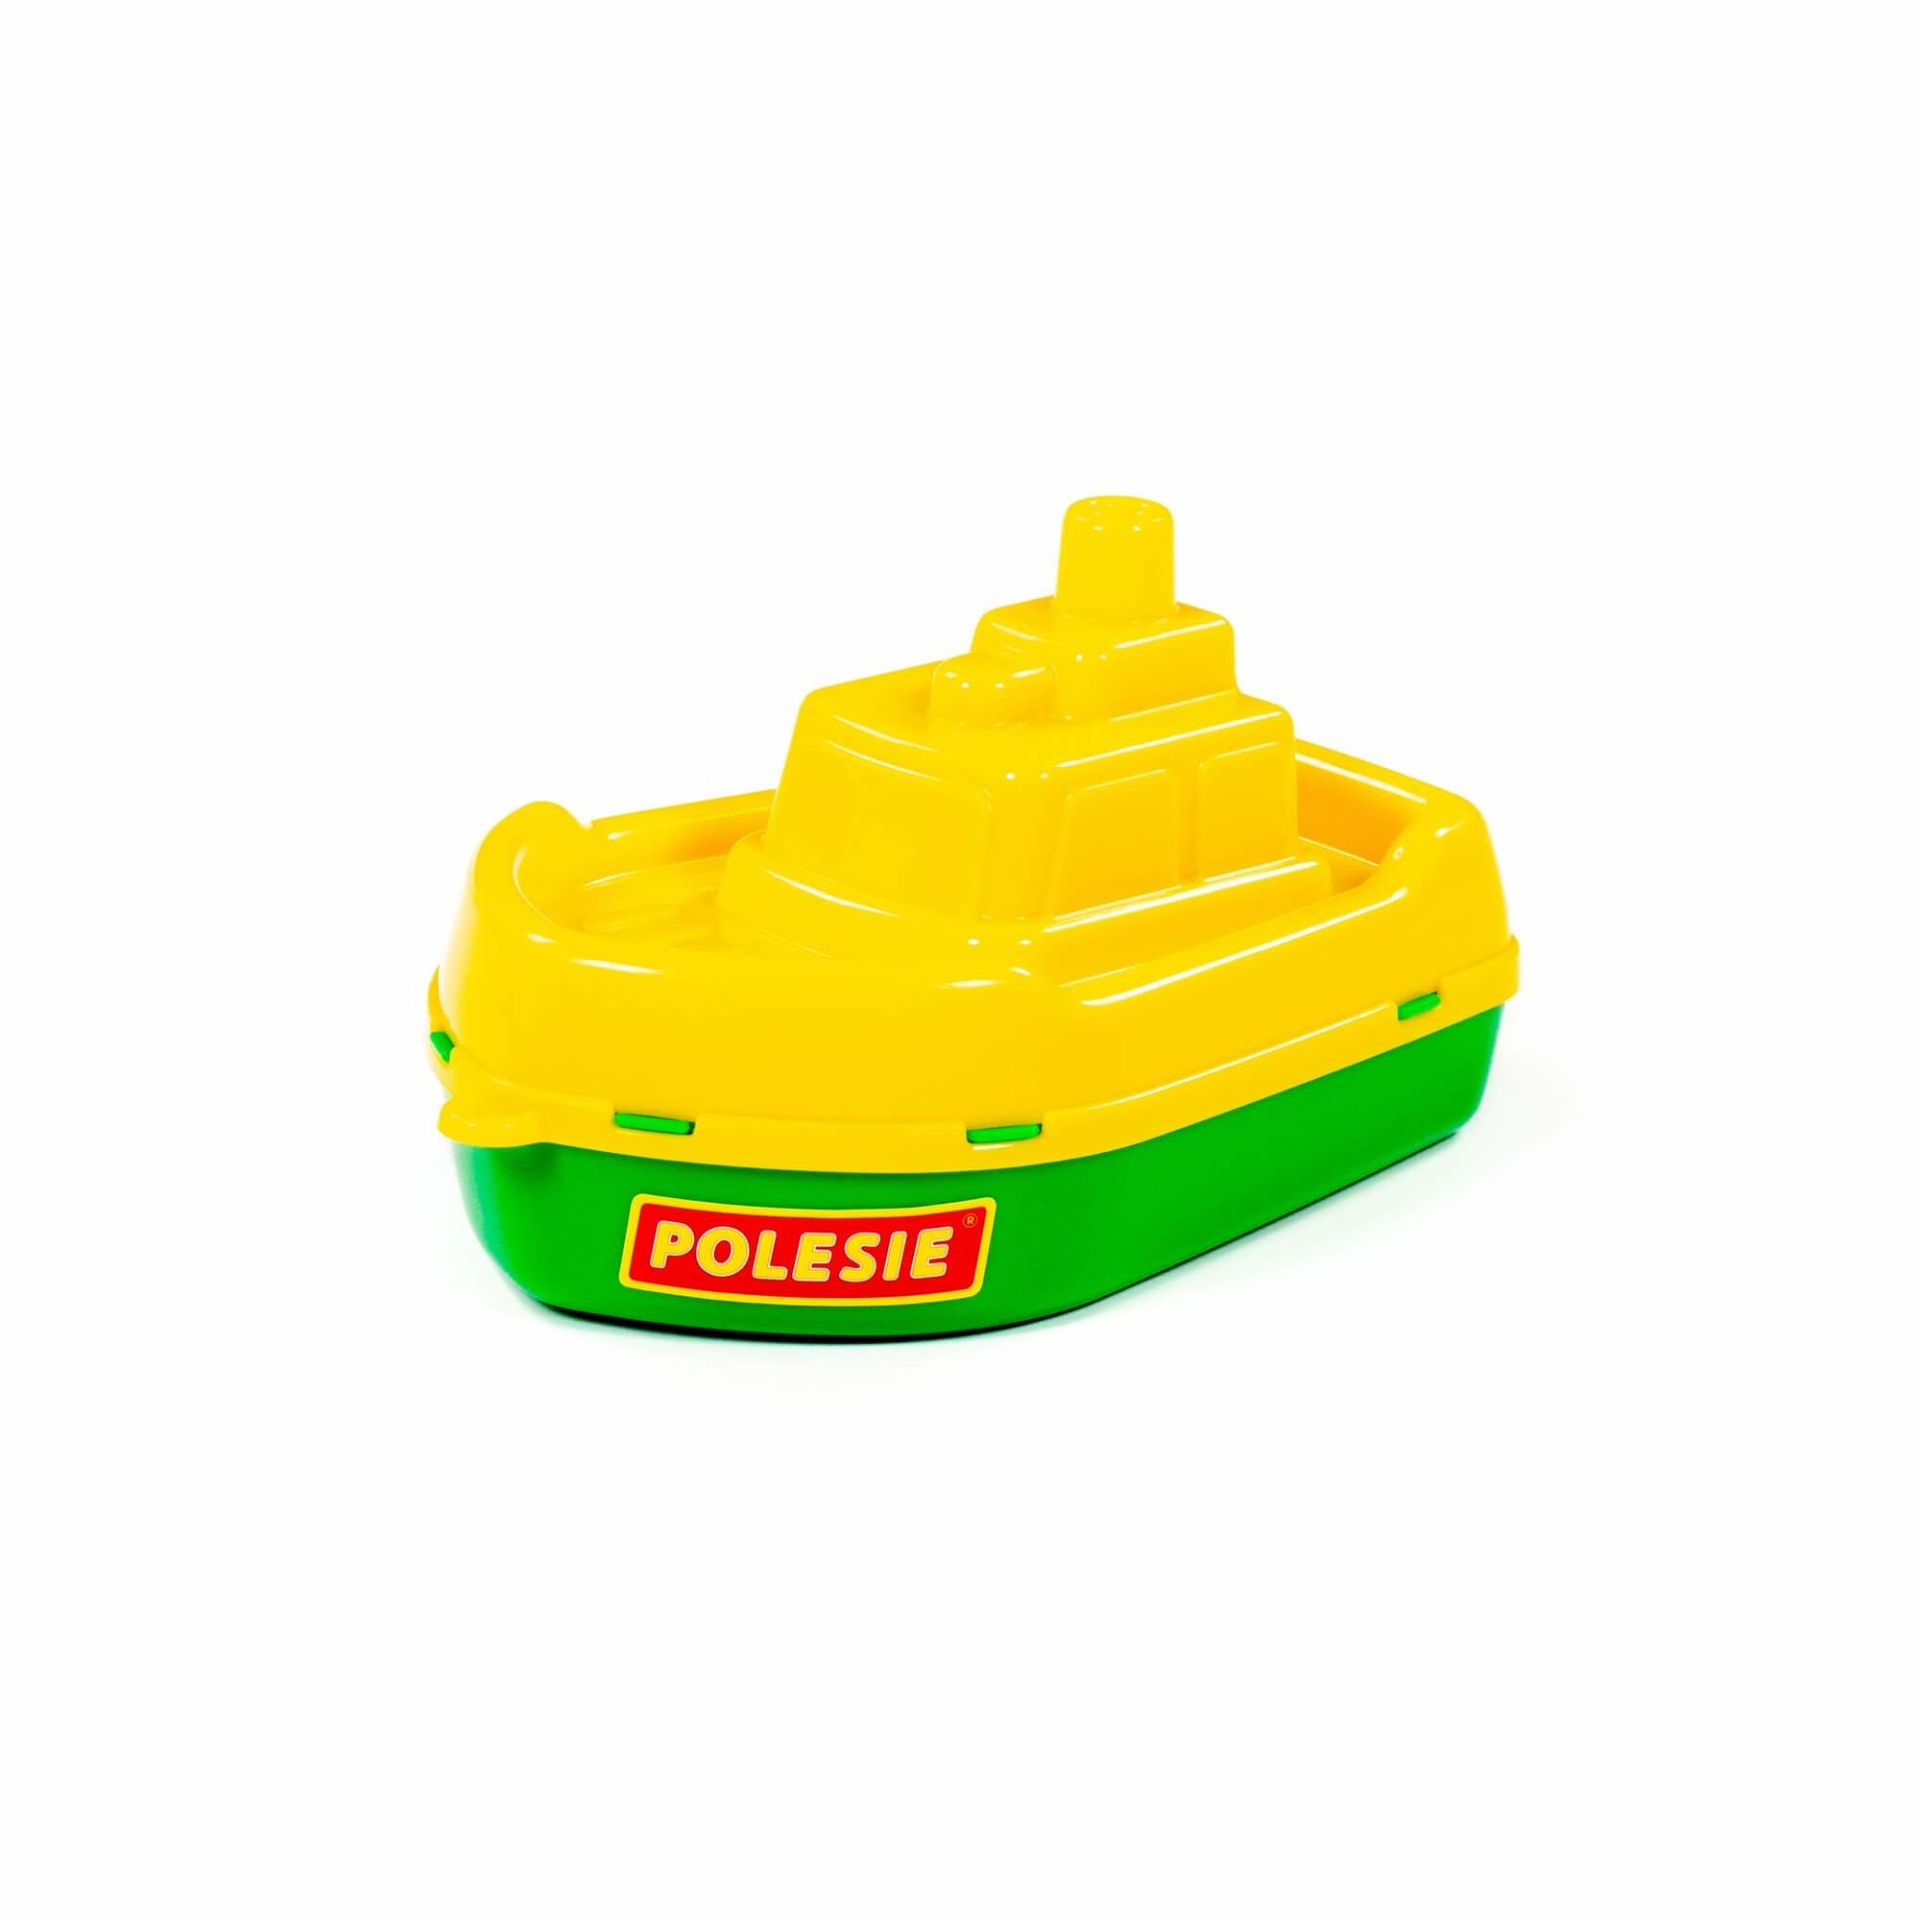 Polesie Buksir Gemi 36537